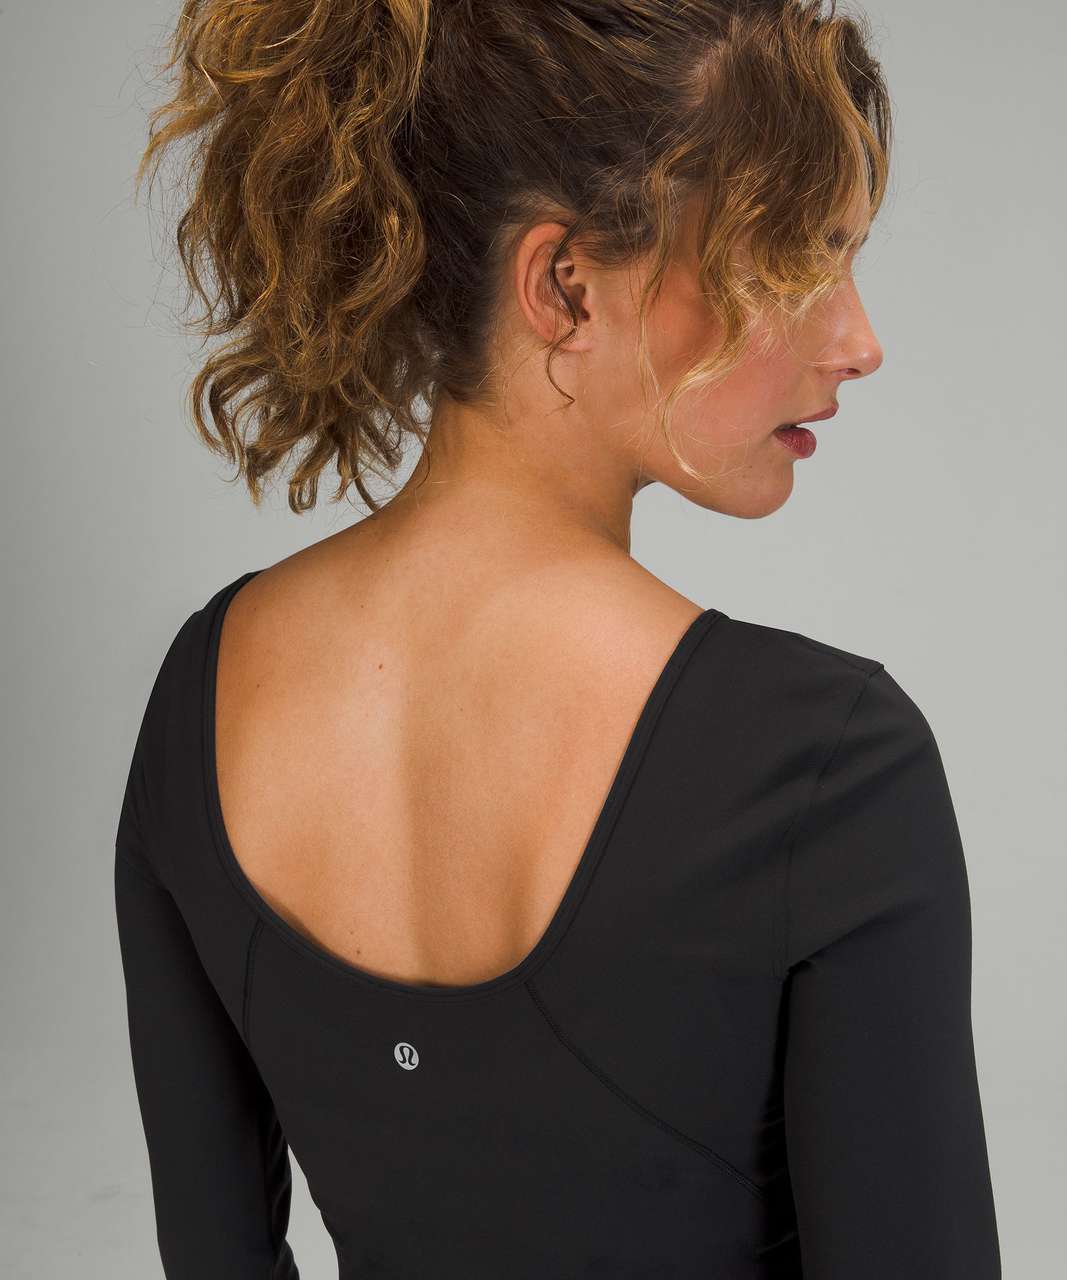 lululemon Align™ Long Sleeve Shirt, Black